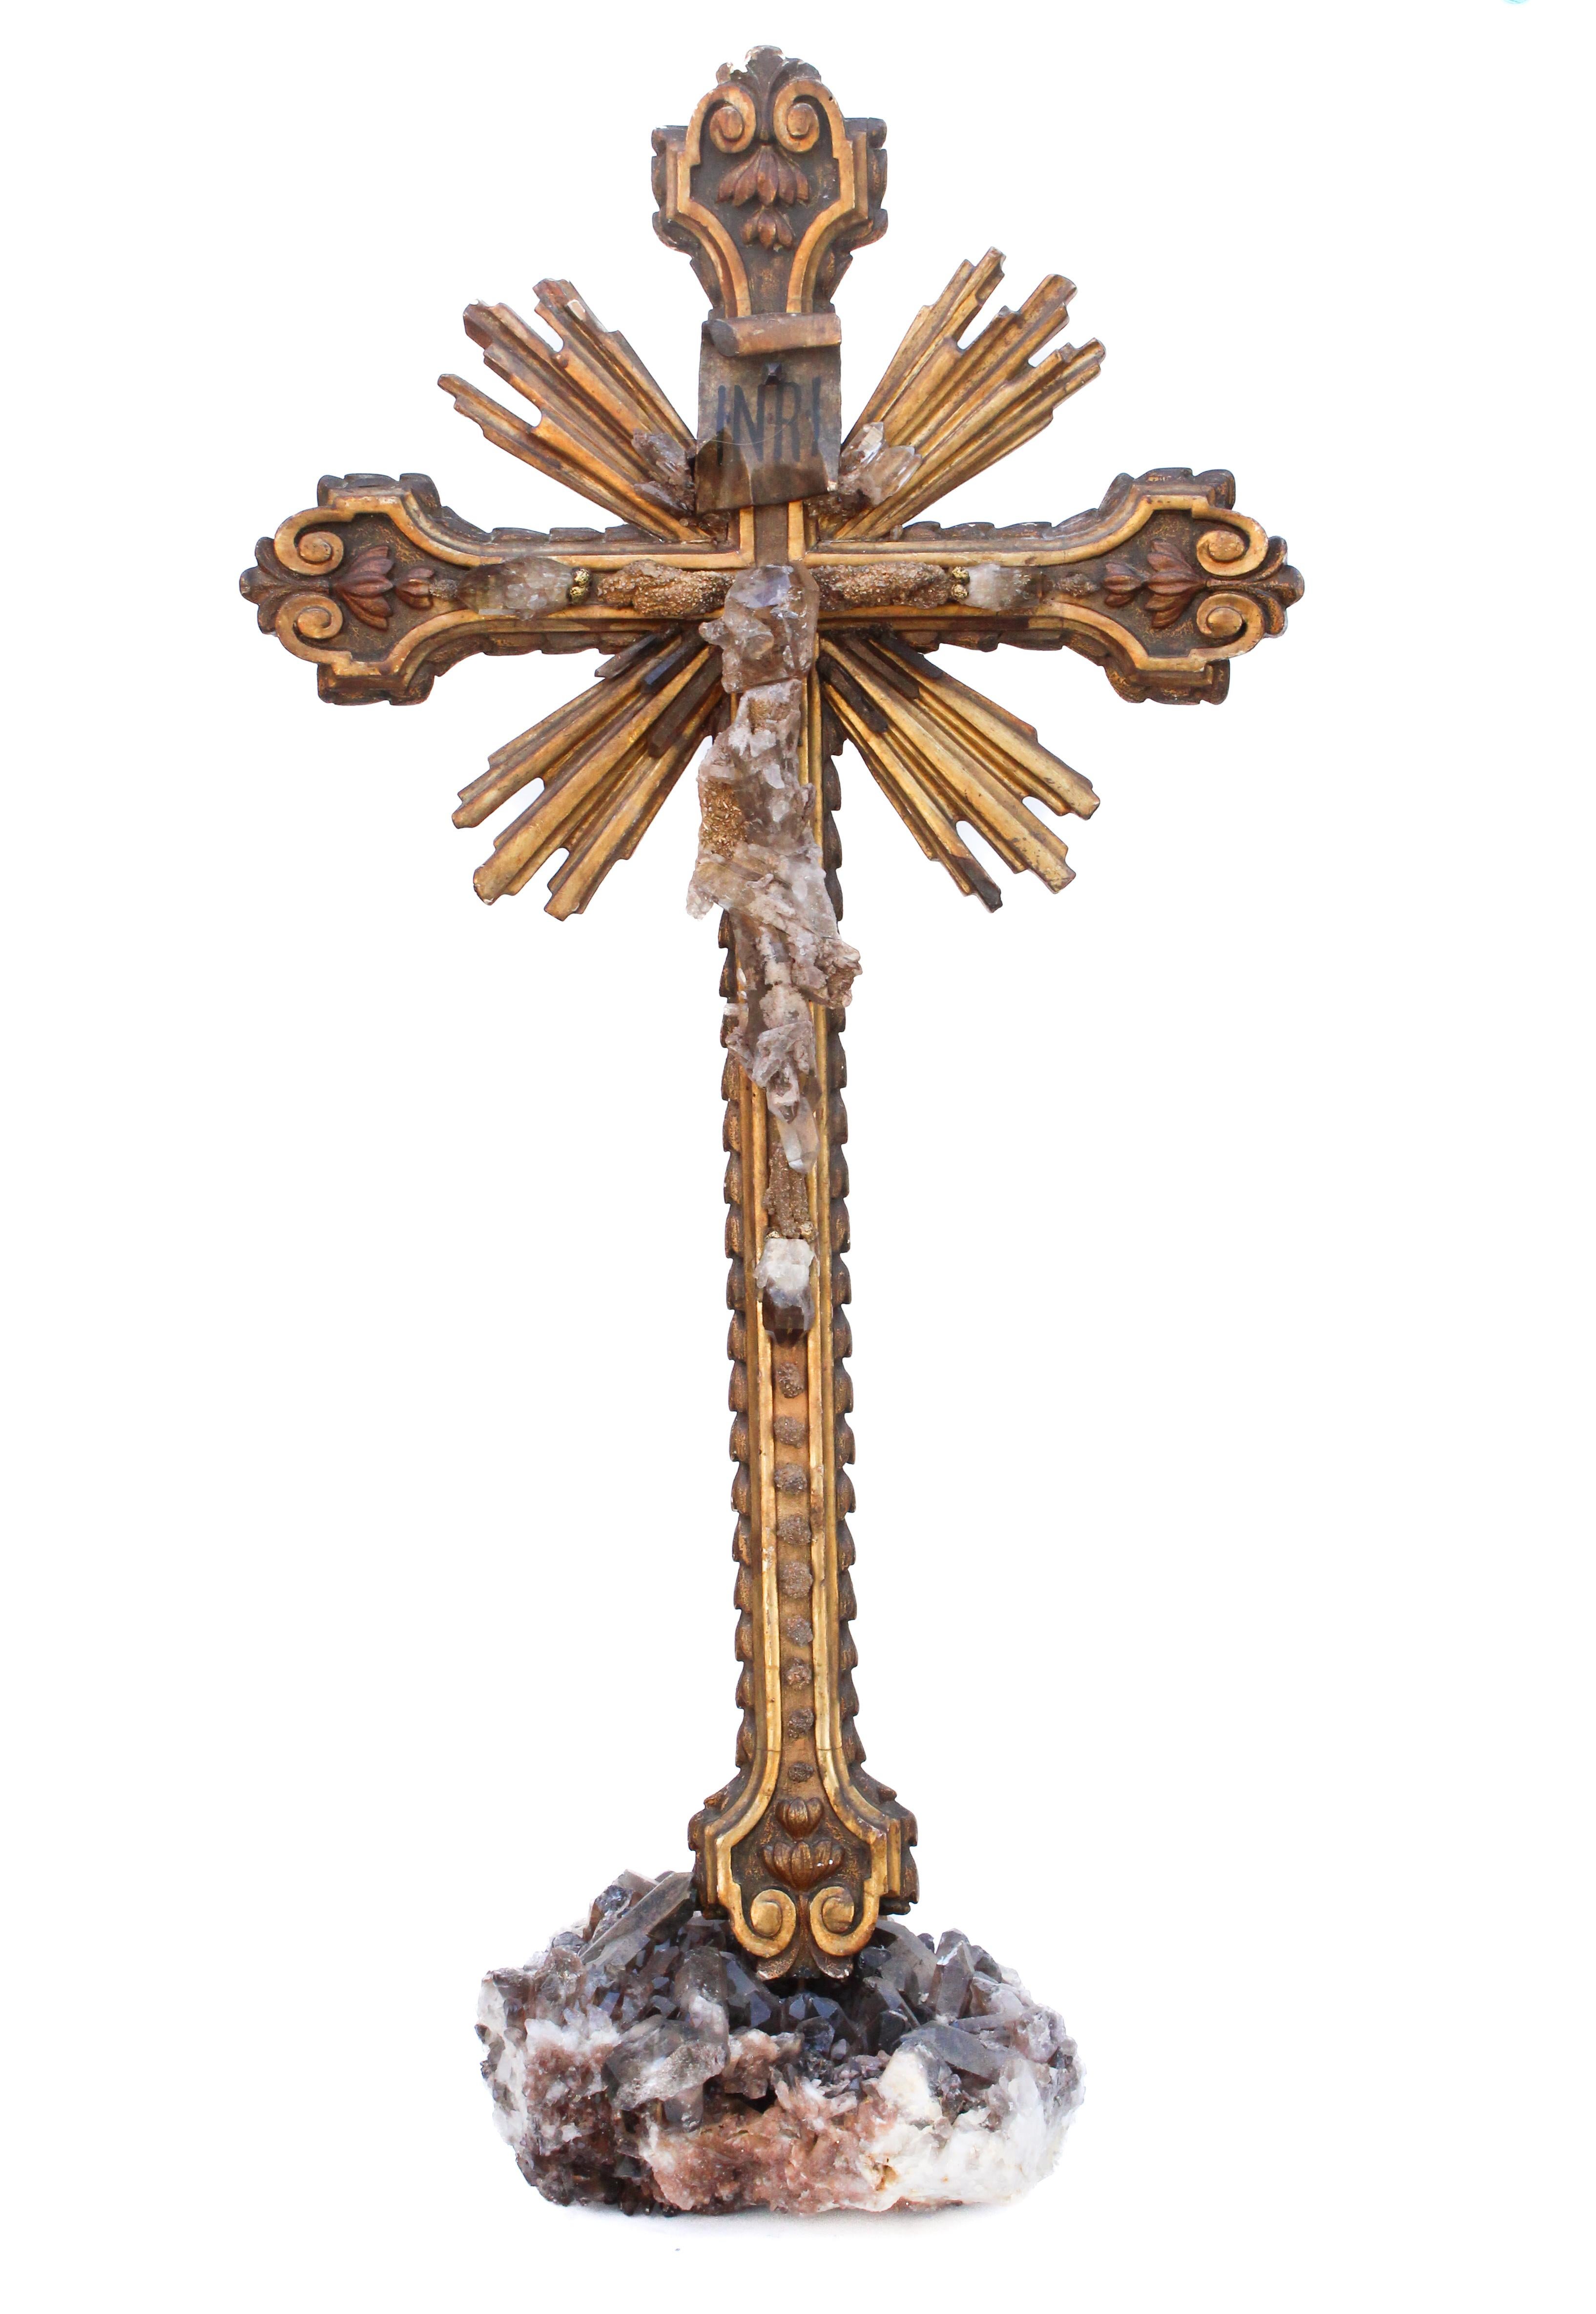 Italienisches braunes und vergoldetes Kreuz aus dem 18. Jahrhundert, verziert mit Rauchquarzkristallen und versteinertem Druzy-Holz. Die Rauchquarzkristalle stammen aus Madagaskar und das versteinerte Druzy-Holz aus den Vereinigten Staaten. Die